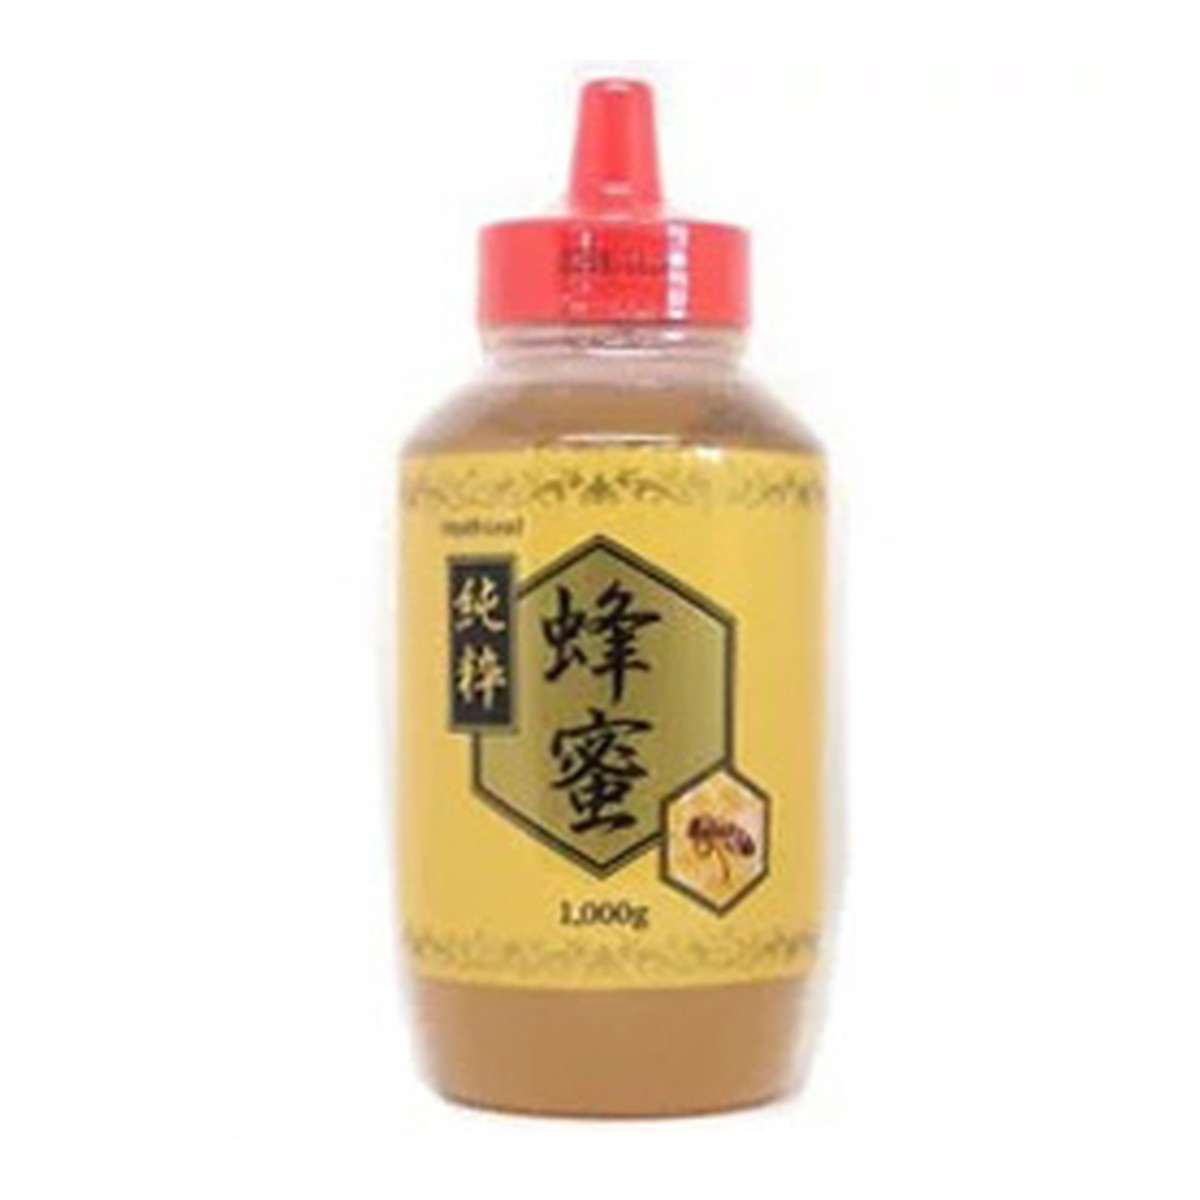 新日本漢方 純粋蜂蜜 1000g